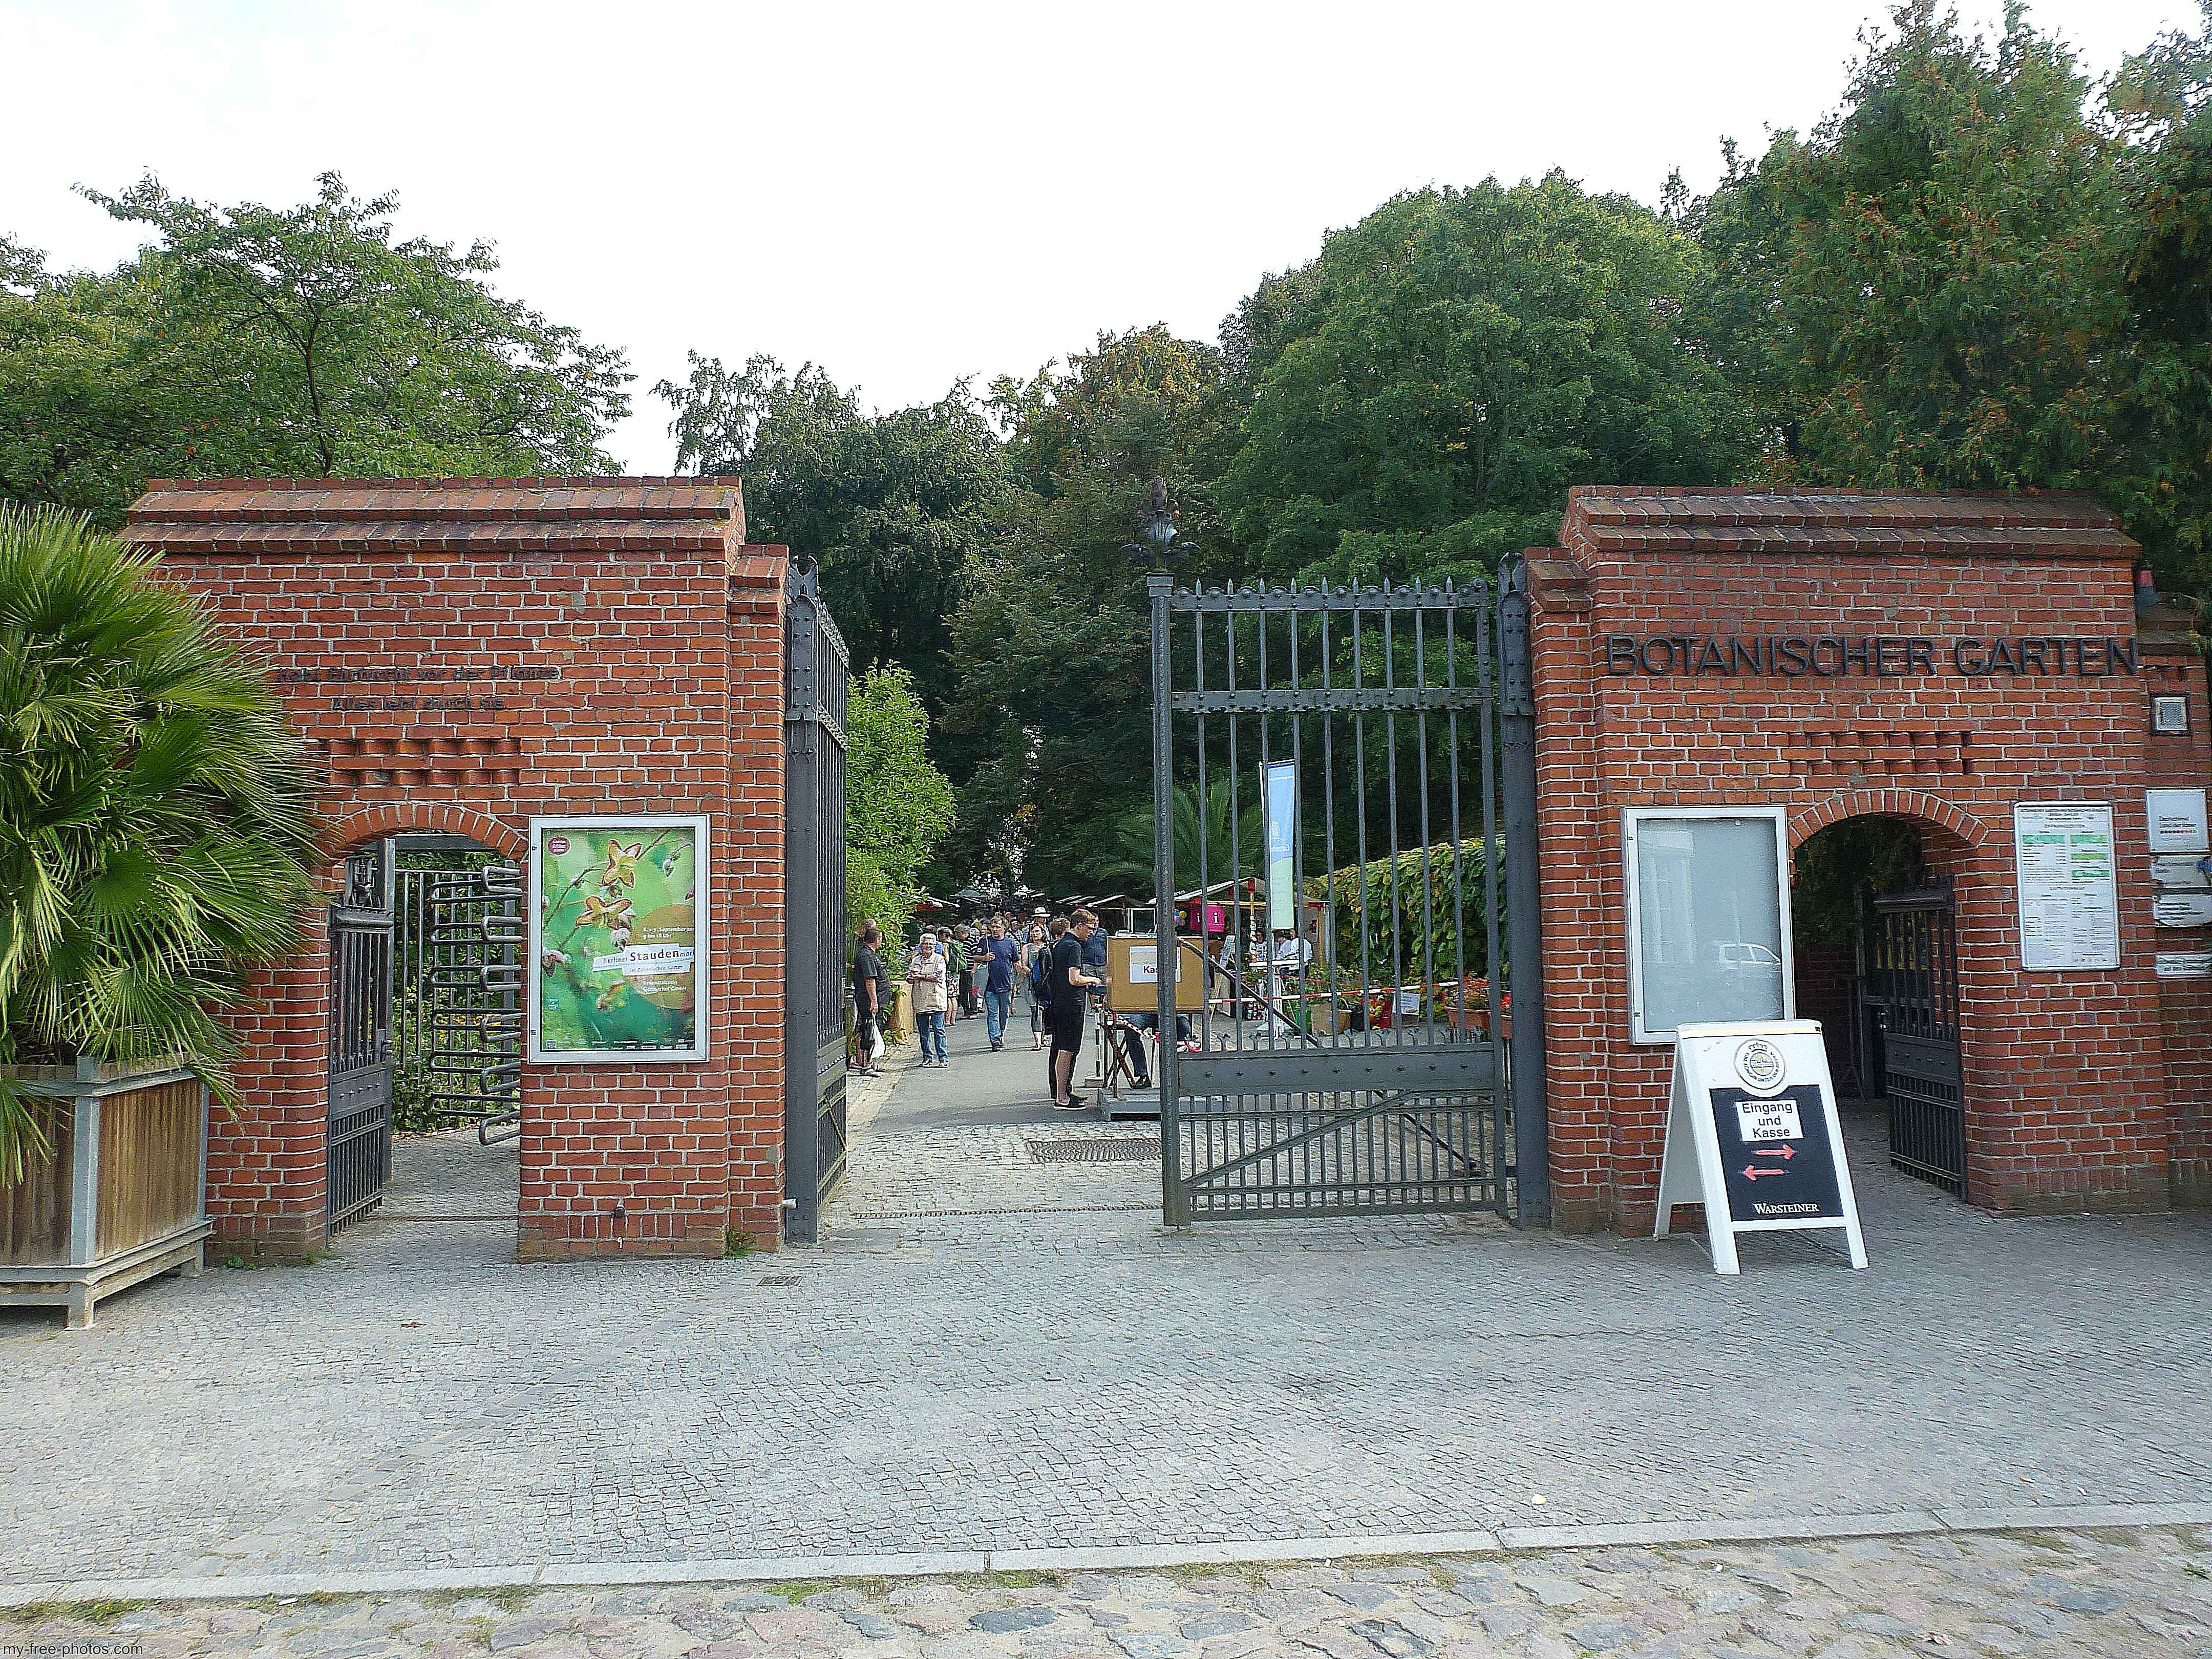 Botanical garden,Berlin